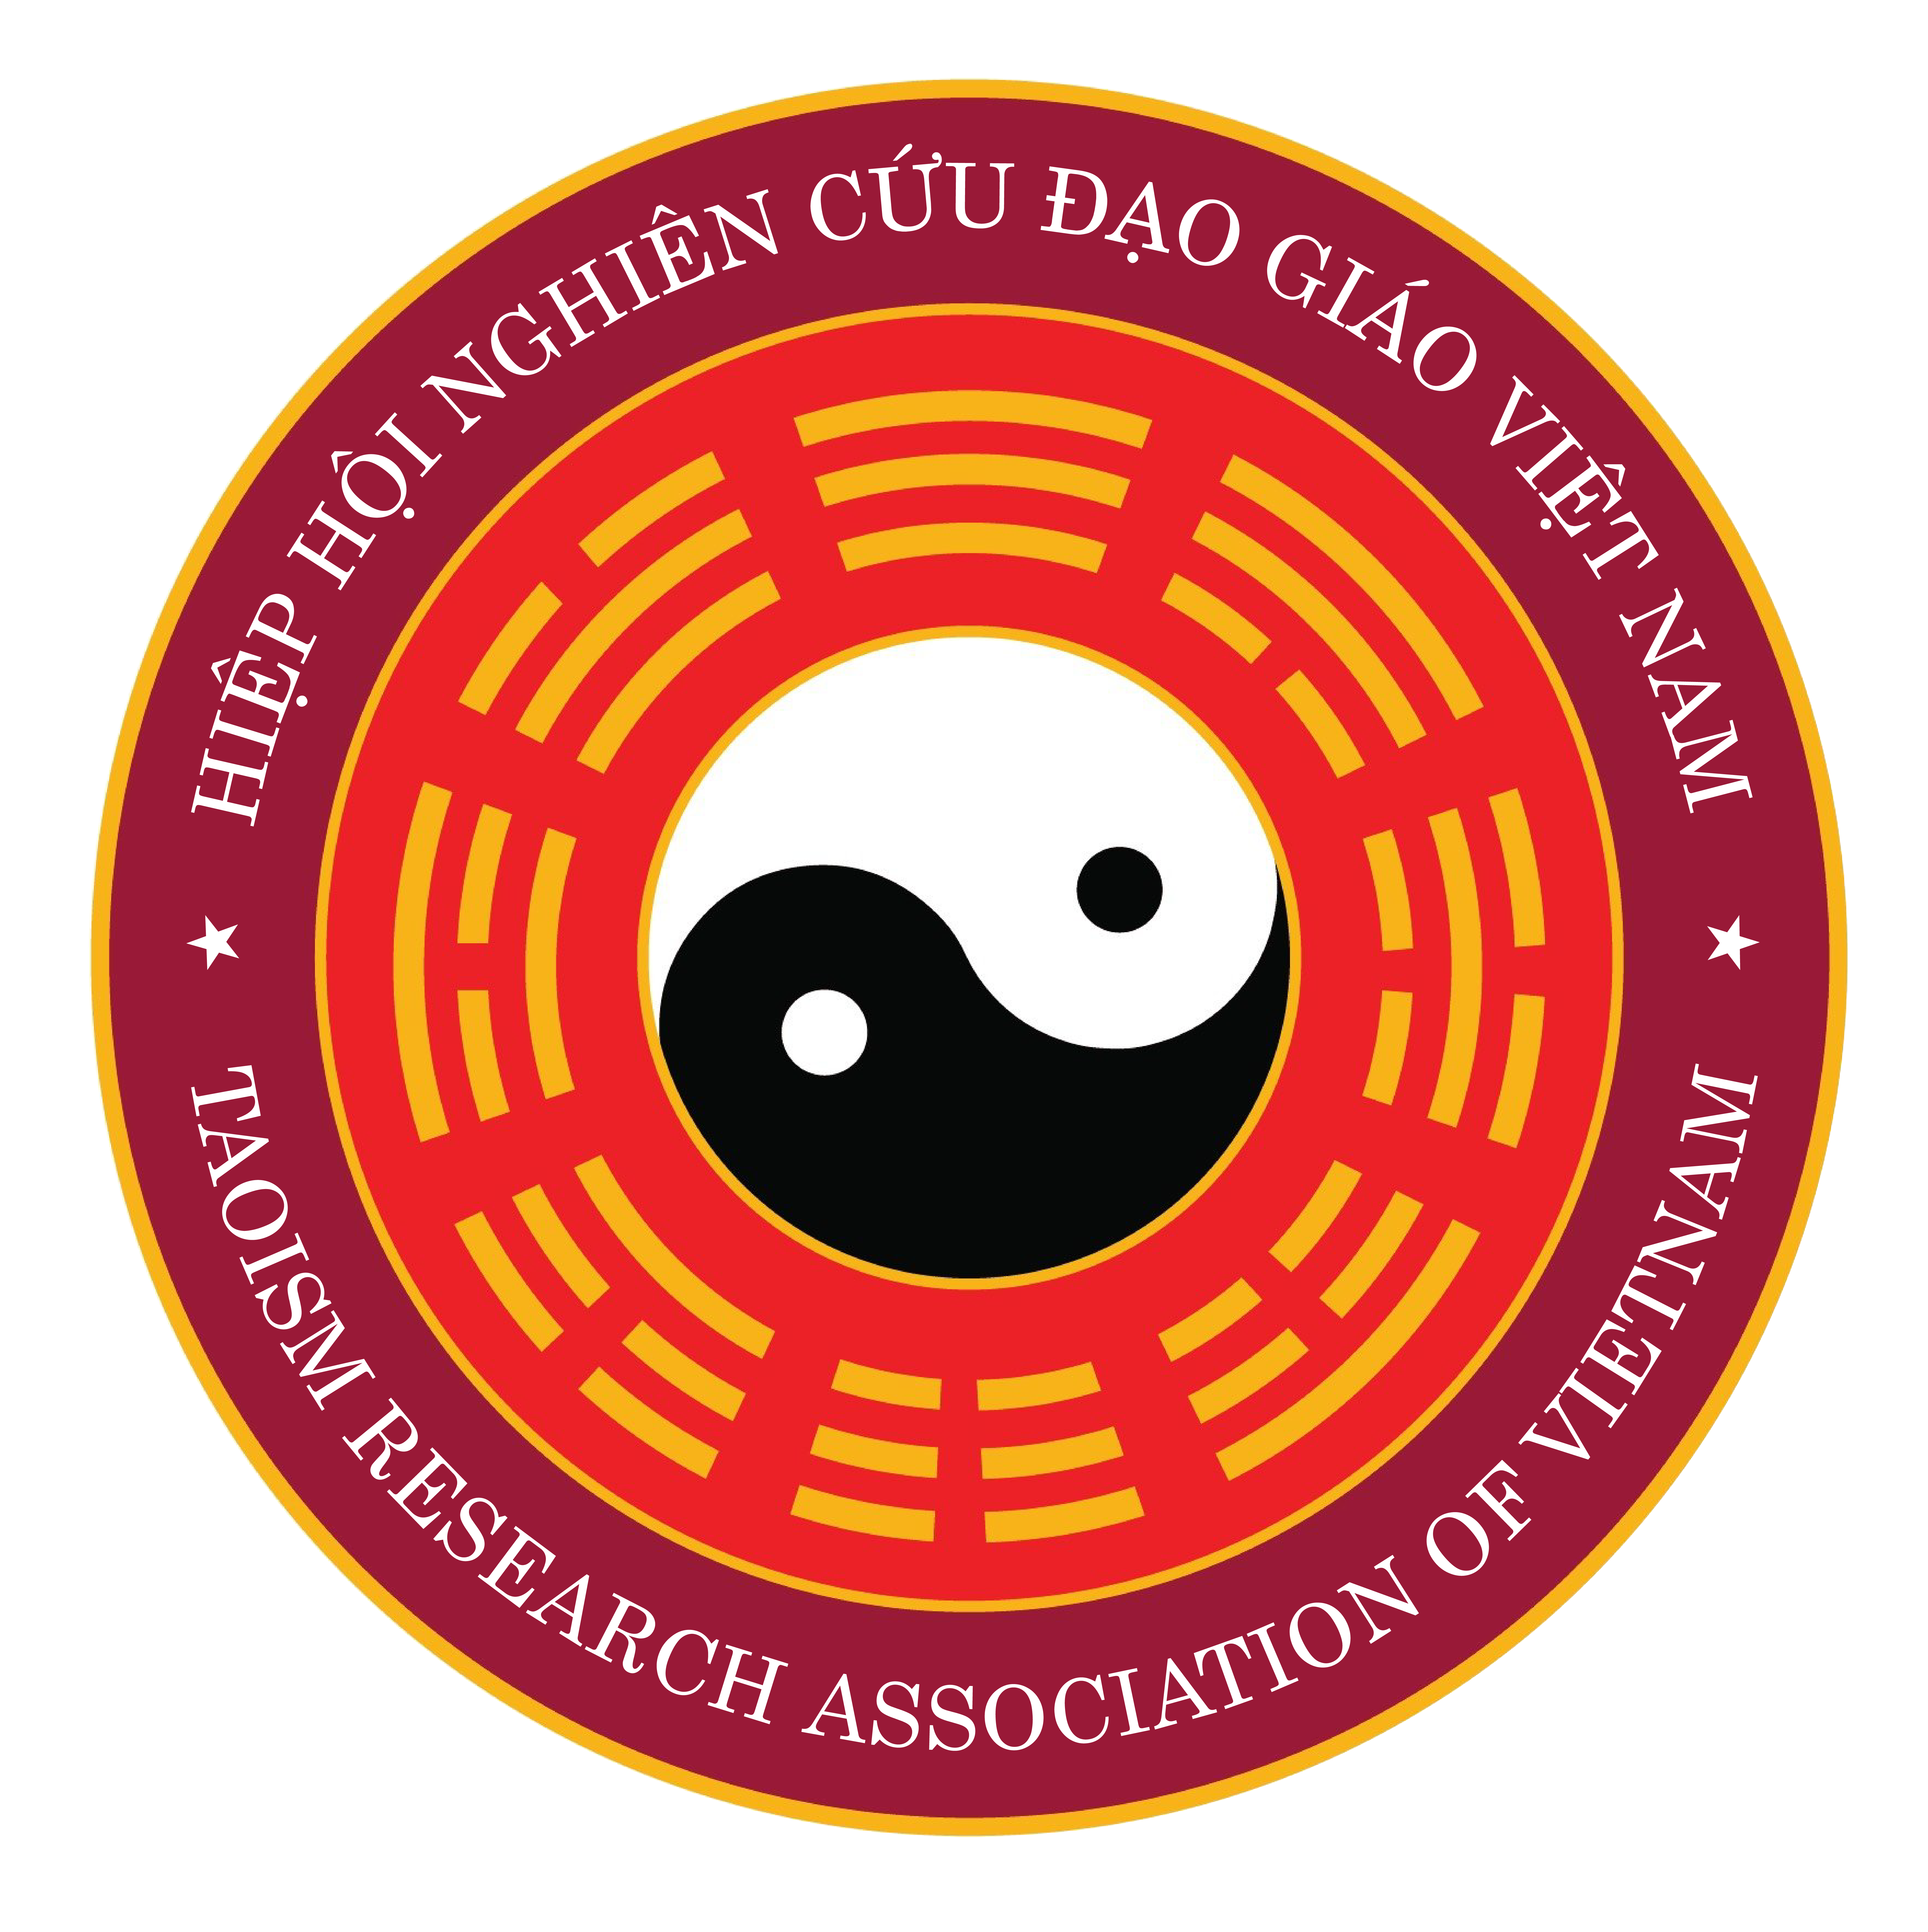 Hiệp hội nghiên cứu Đạo giáo Việt Nam